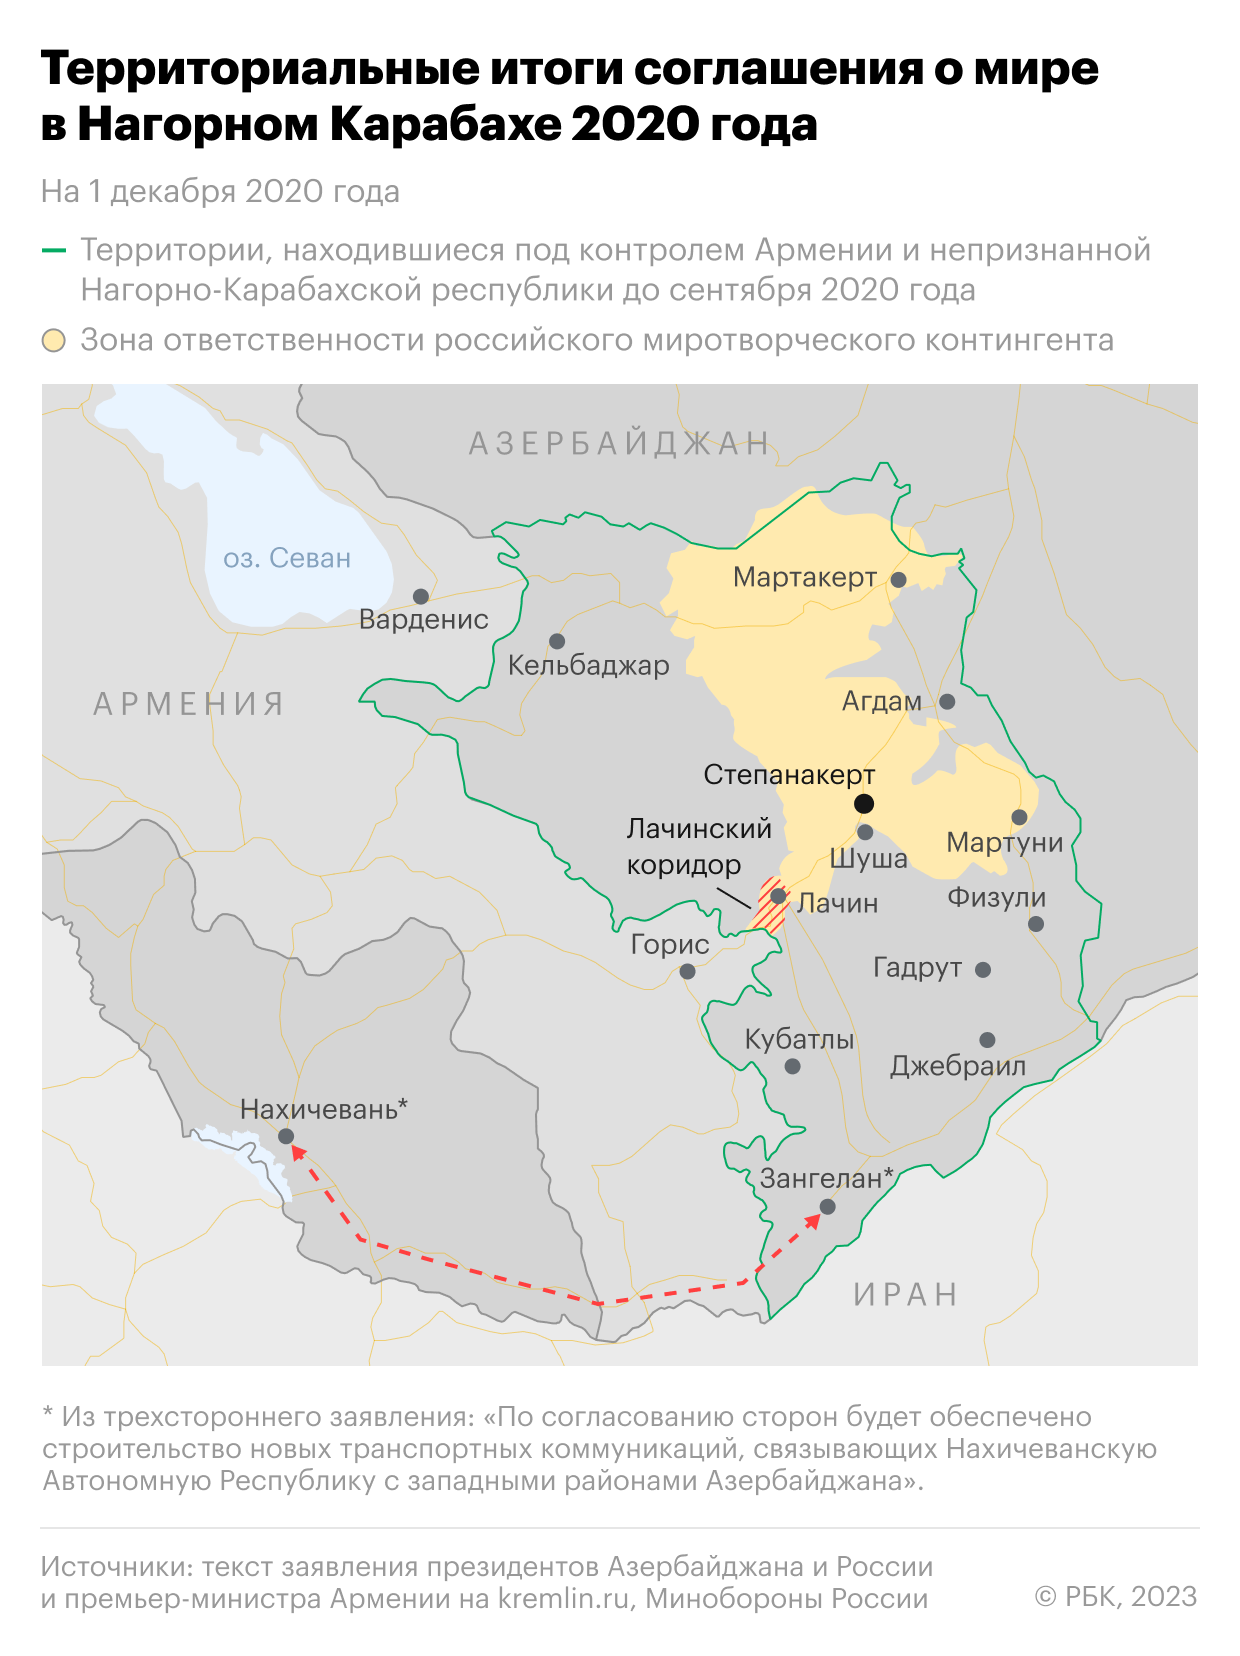 Карта итогов соглашения 2020 года о прекращении военных действий в зоне нагорно-карабахского конфликта